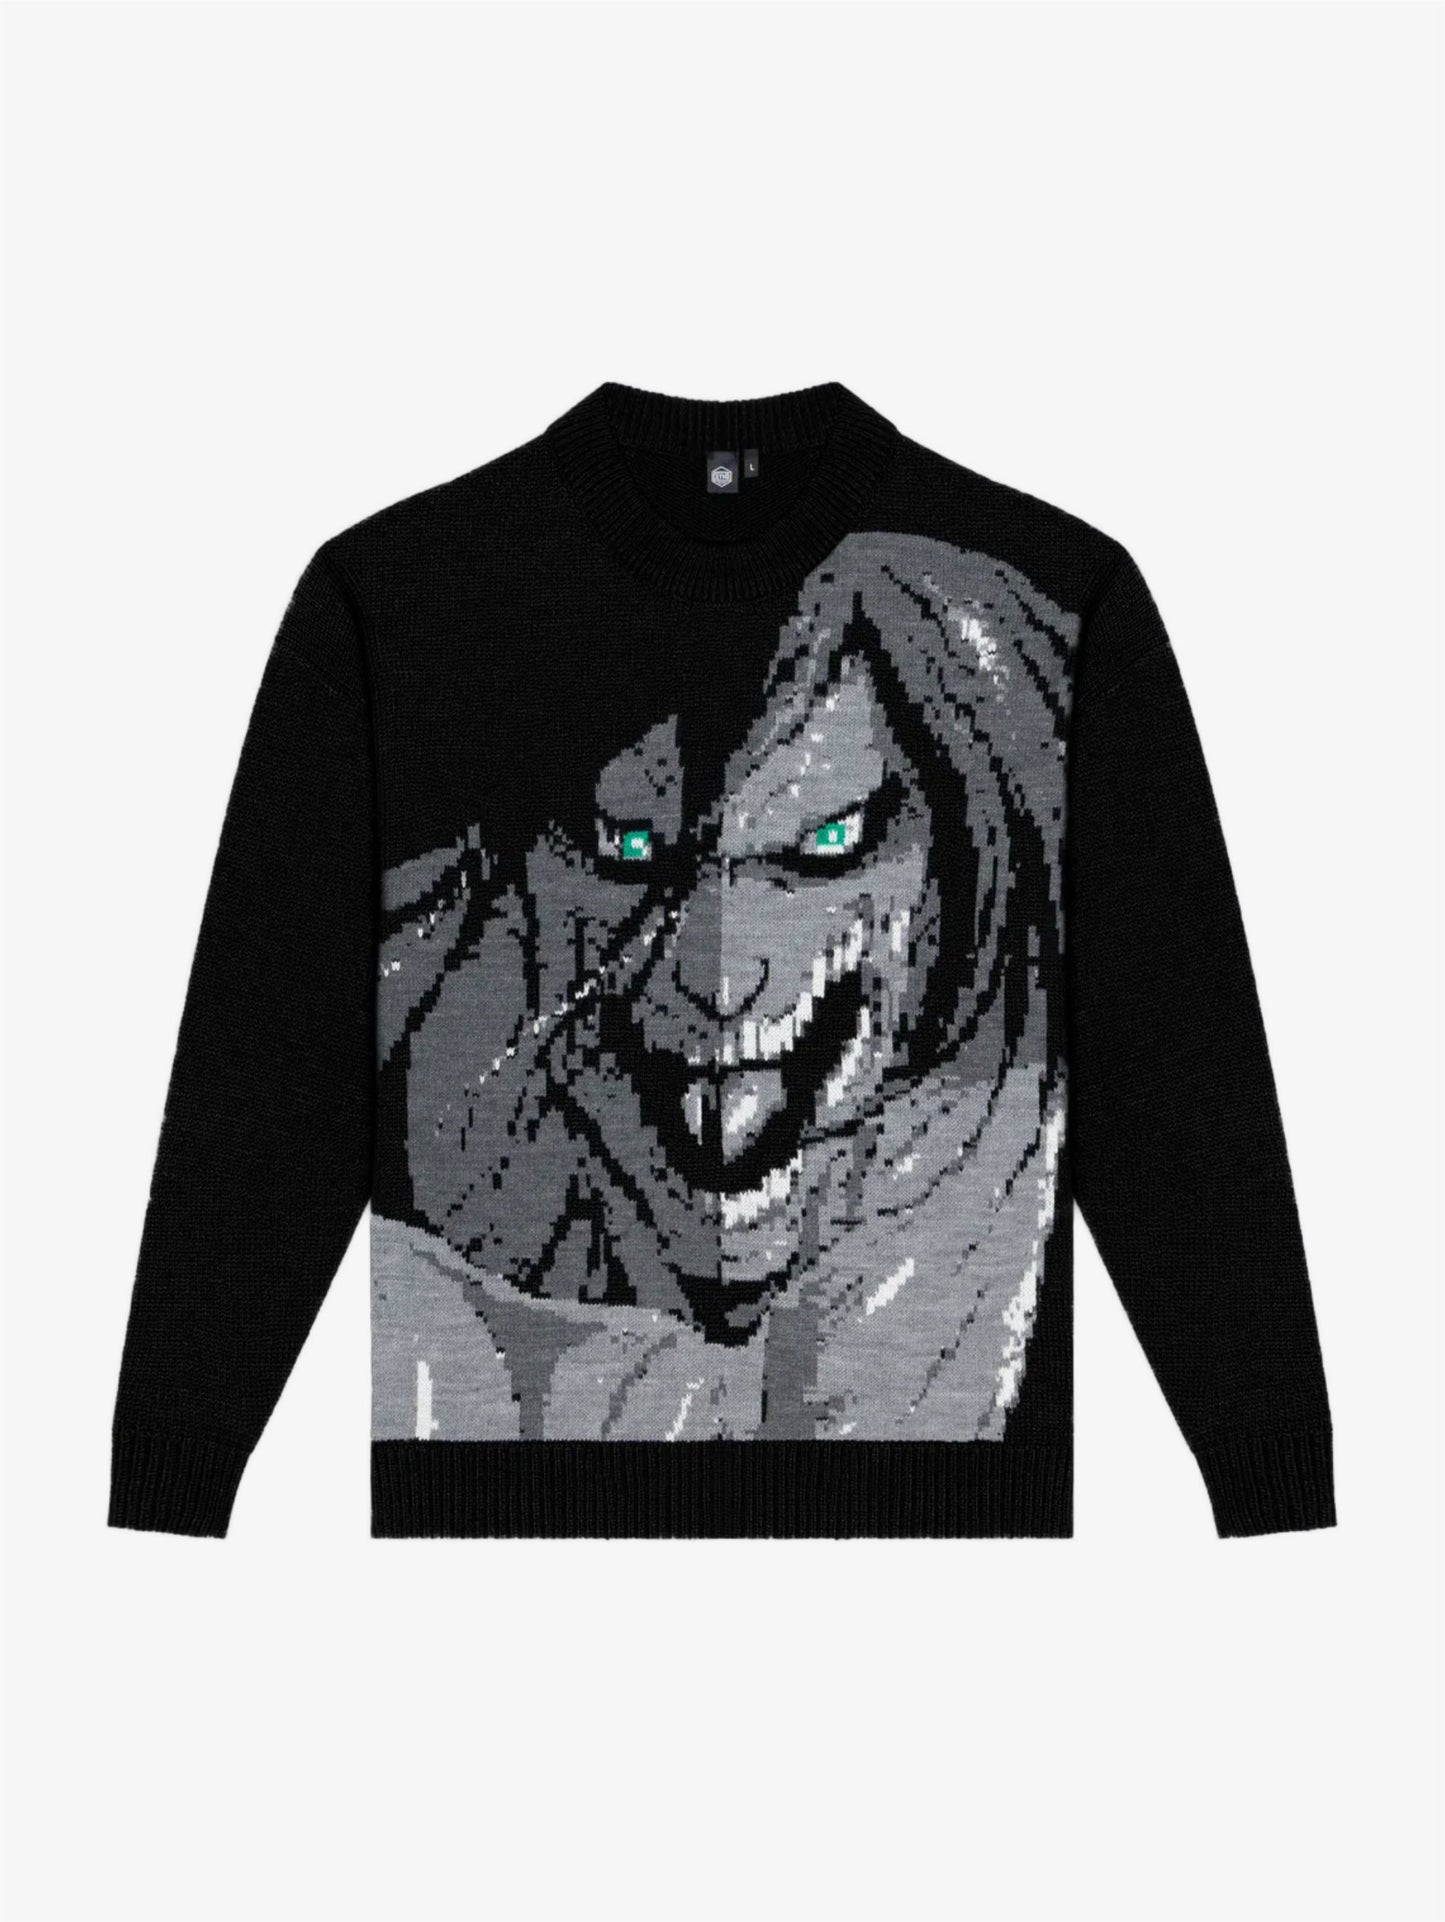 Attack Titan Sweater Black maglione